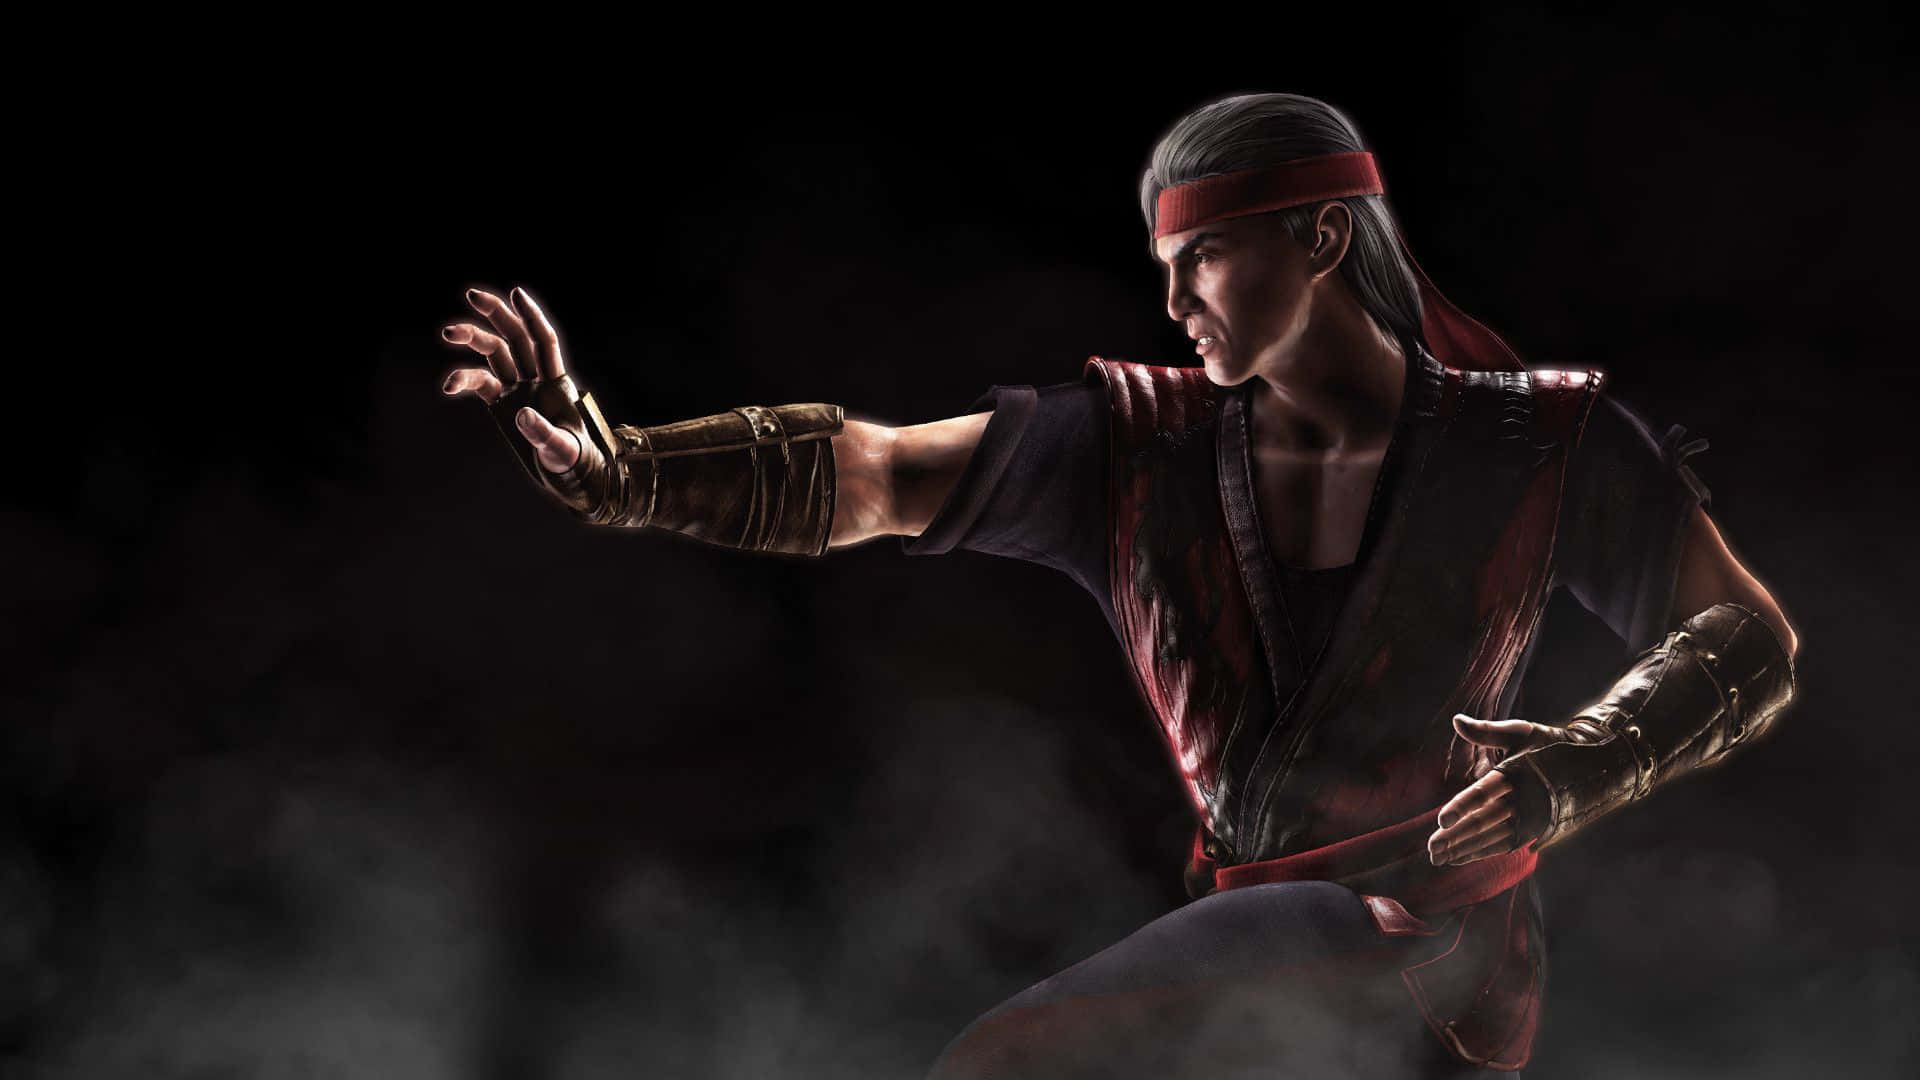 Liu Kang Unleashing his Fury in Mortal Kombat Wallpaper